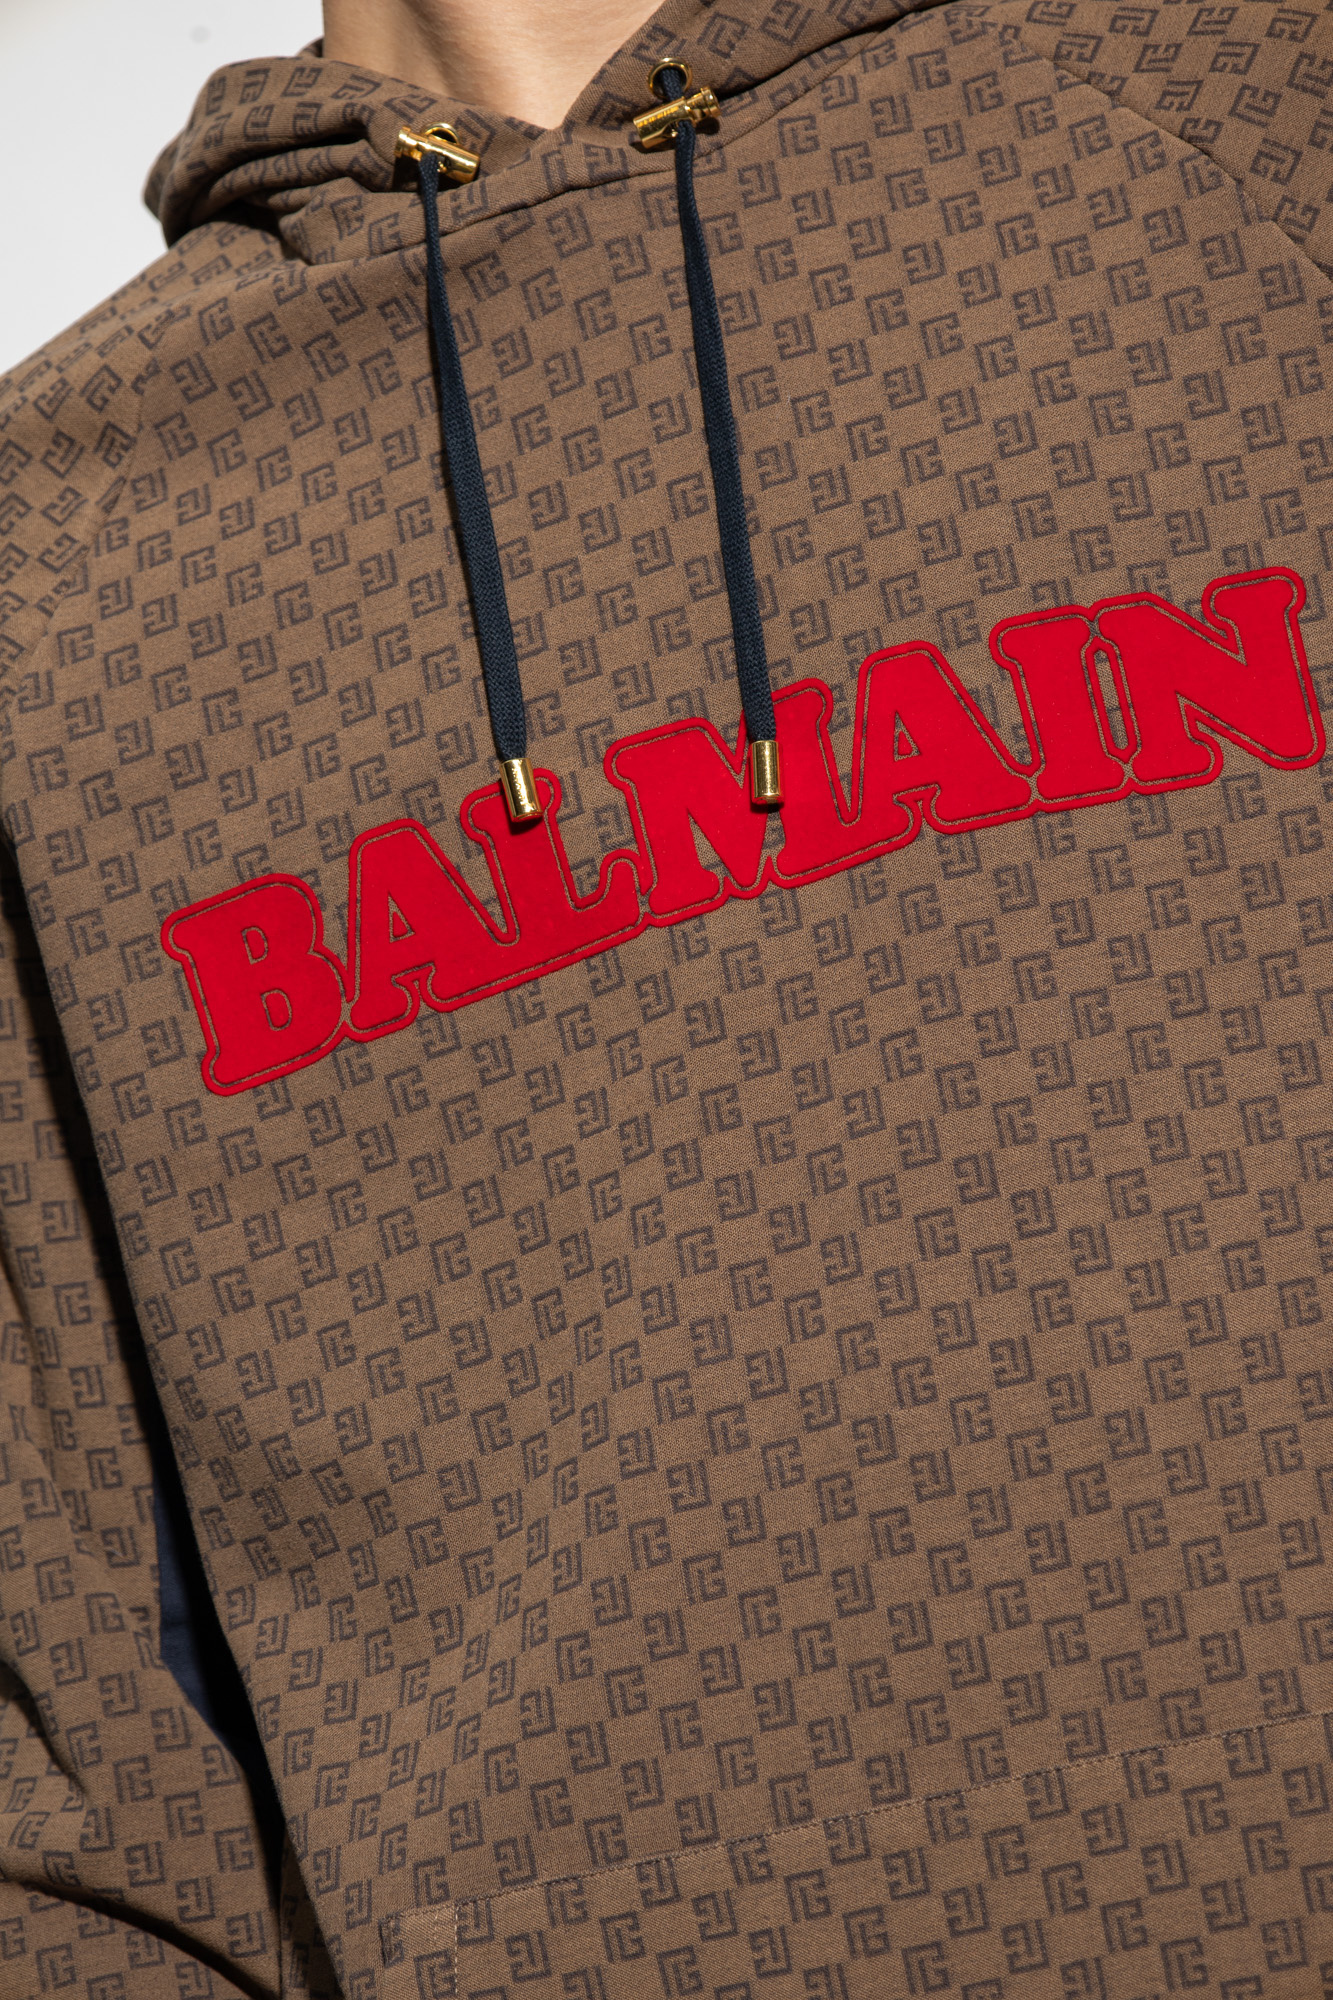 Balmain Monogram Hoodie in Brown